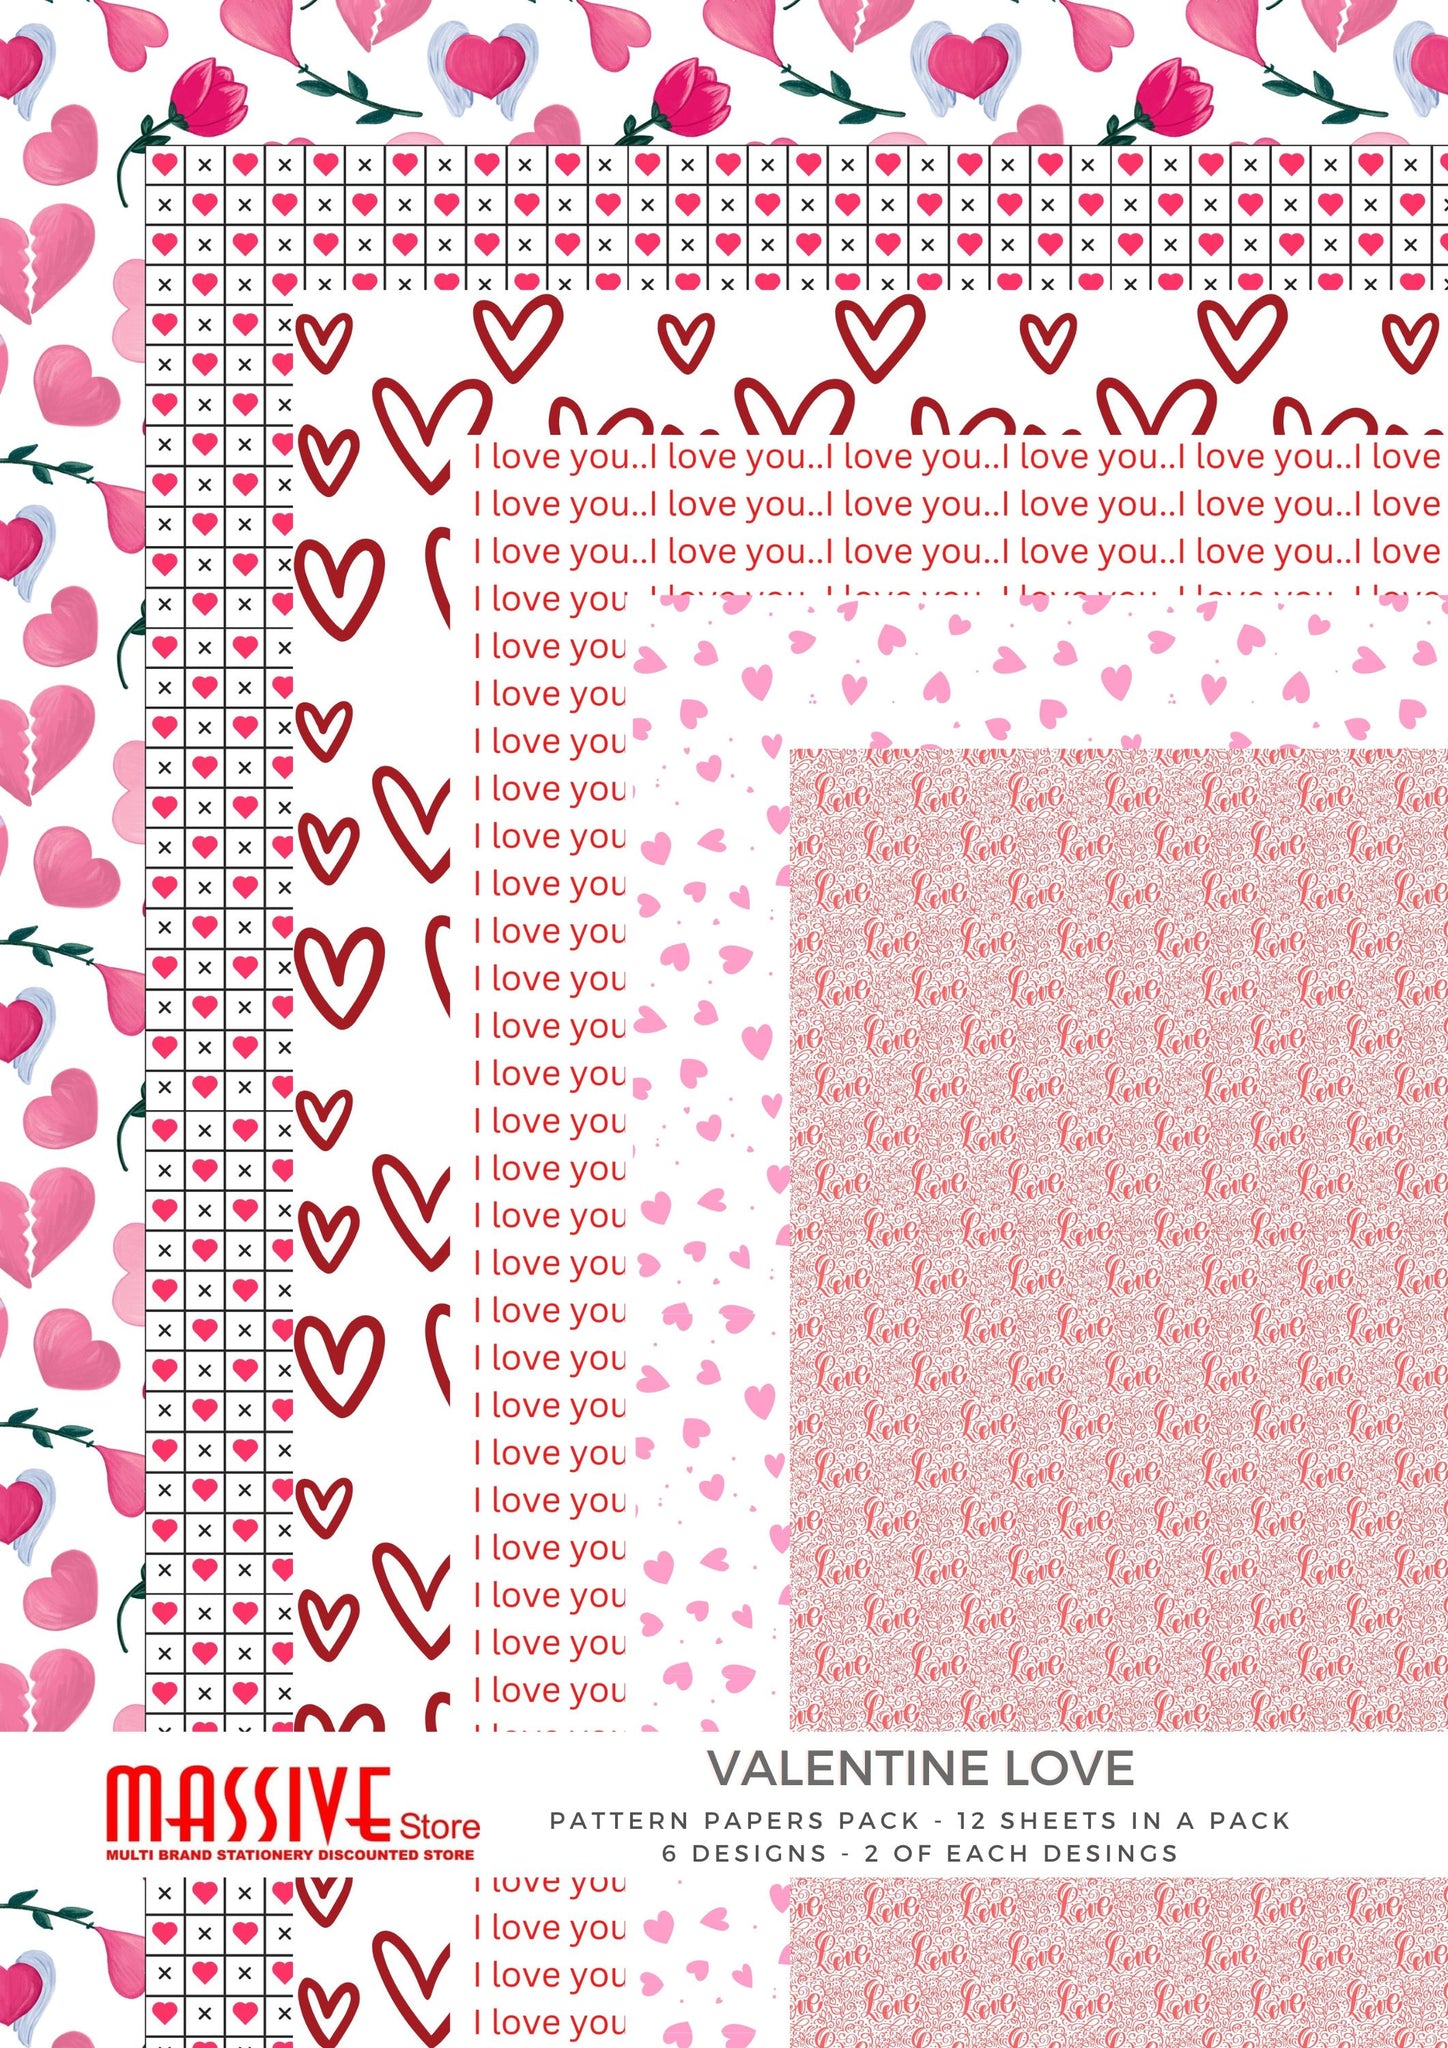 Valentine Love - Pattern Paper